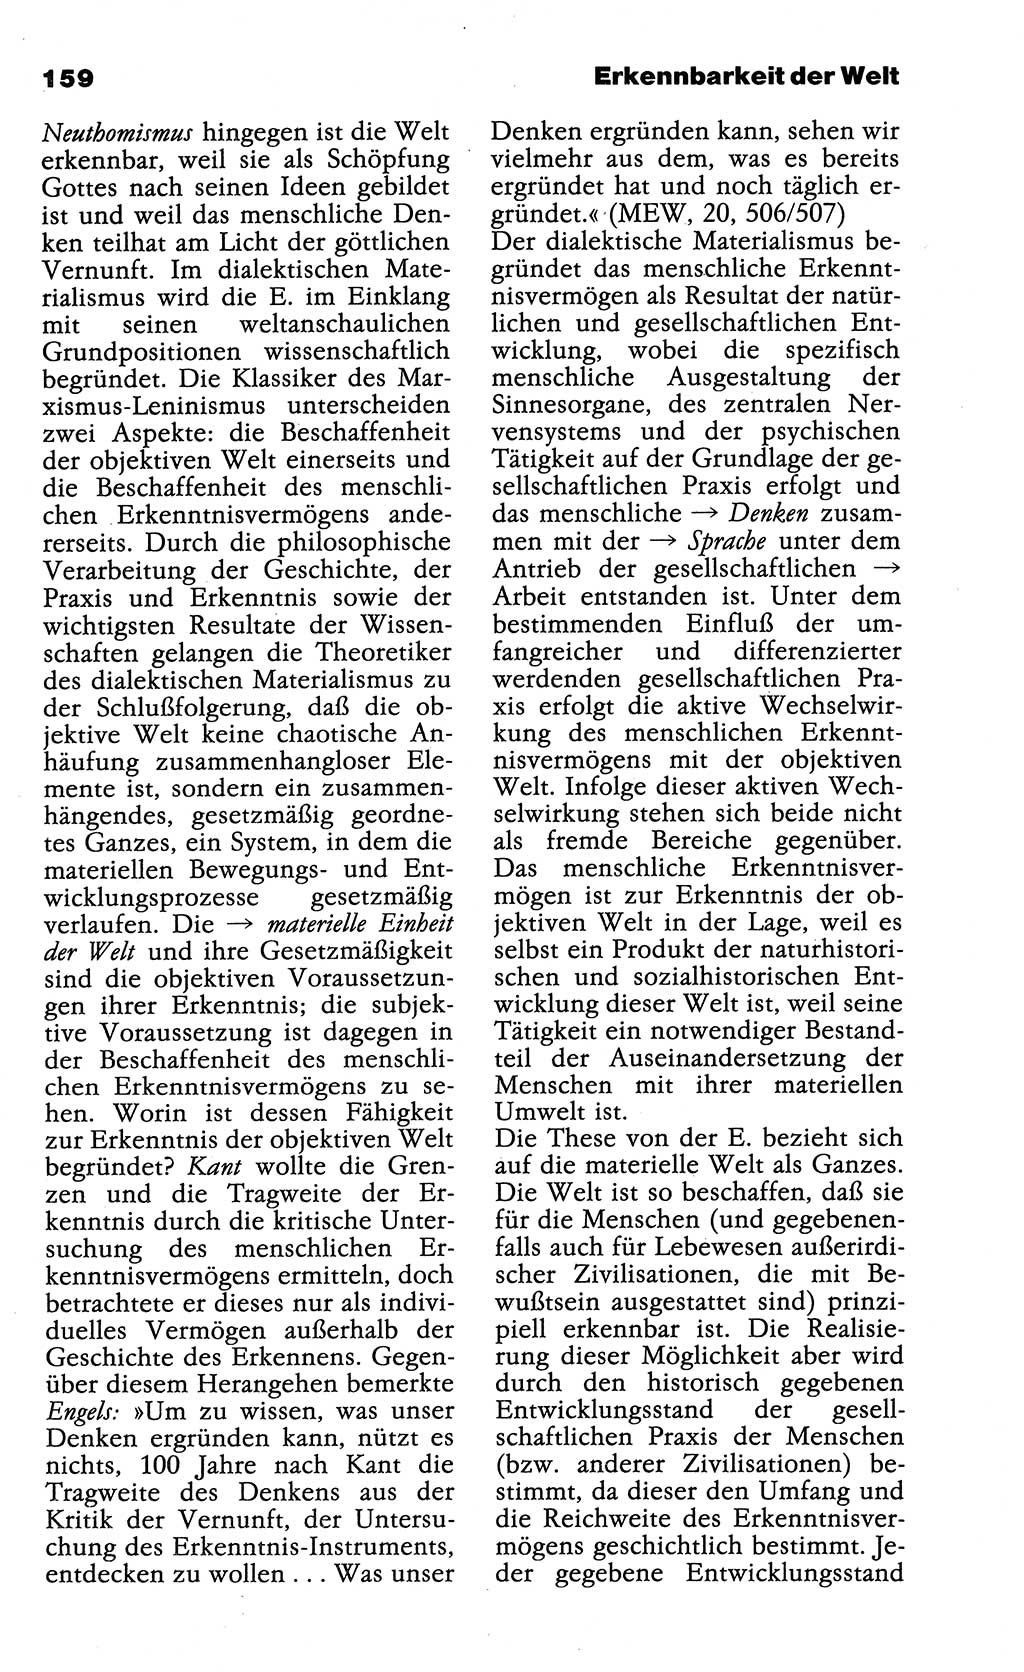 Wörterbuch der marxistisch-leninistischen Philosophie [Deutsche Demokratische Republik (DDR)] 1985, Seite 159 (Wb. ML Phil. DDR 1985, S. 159)